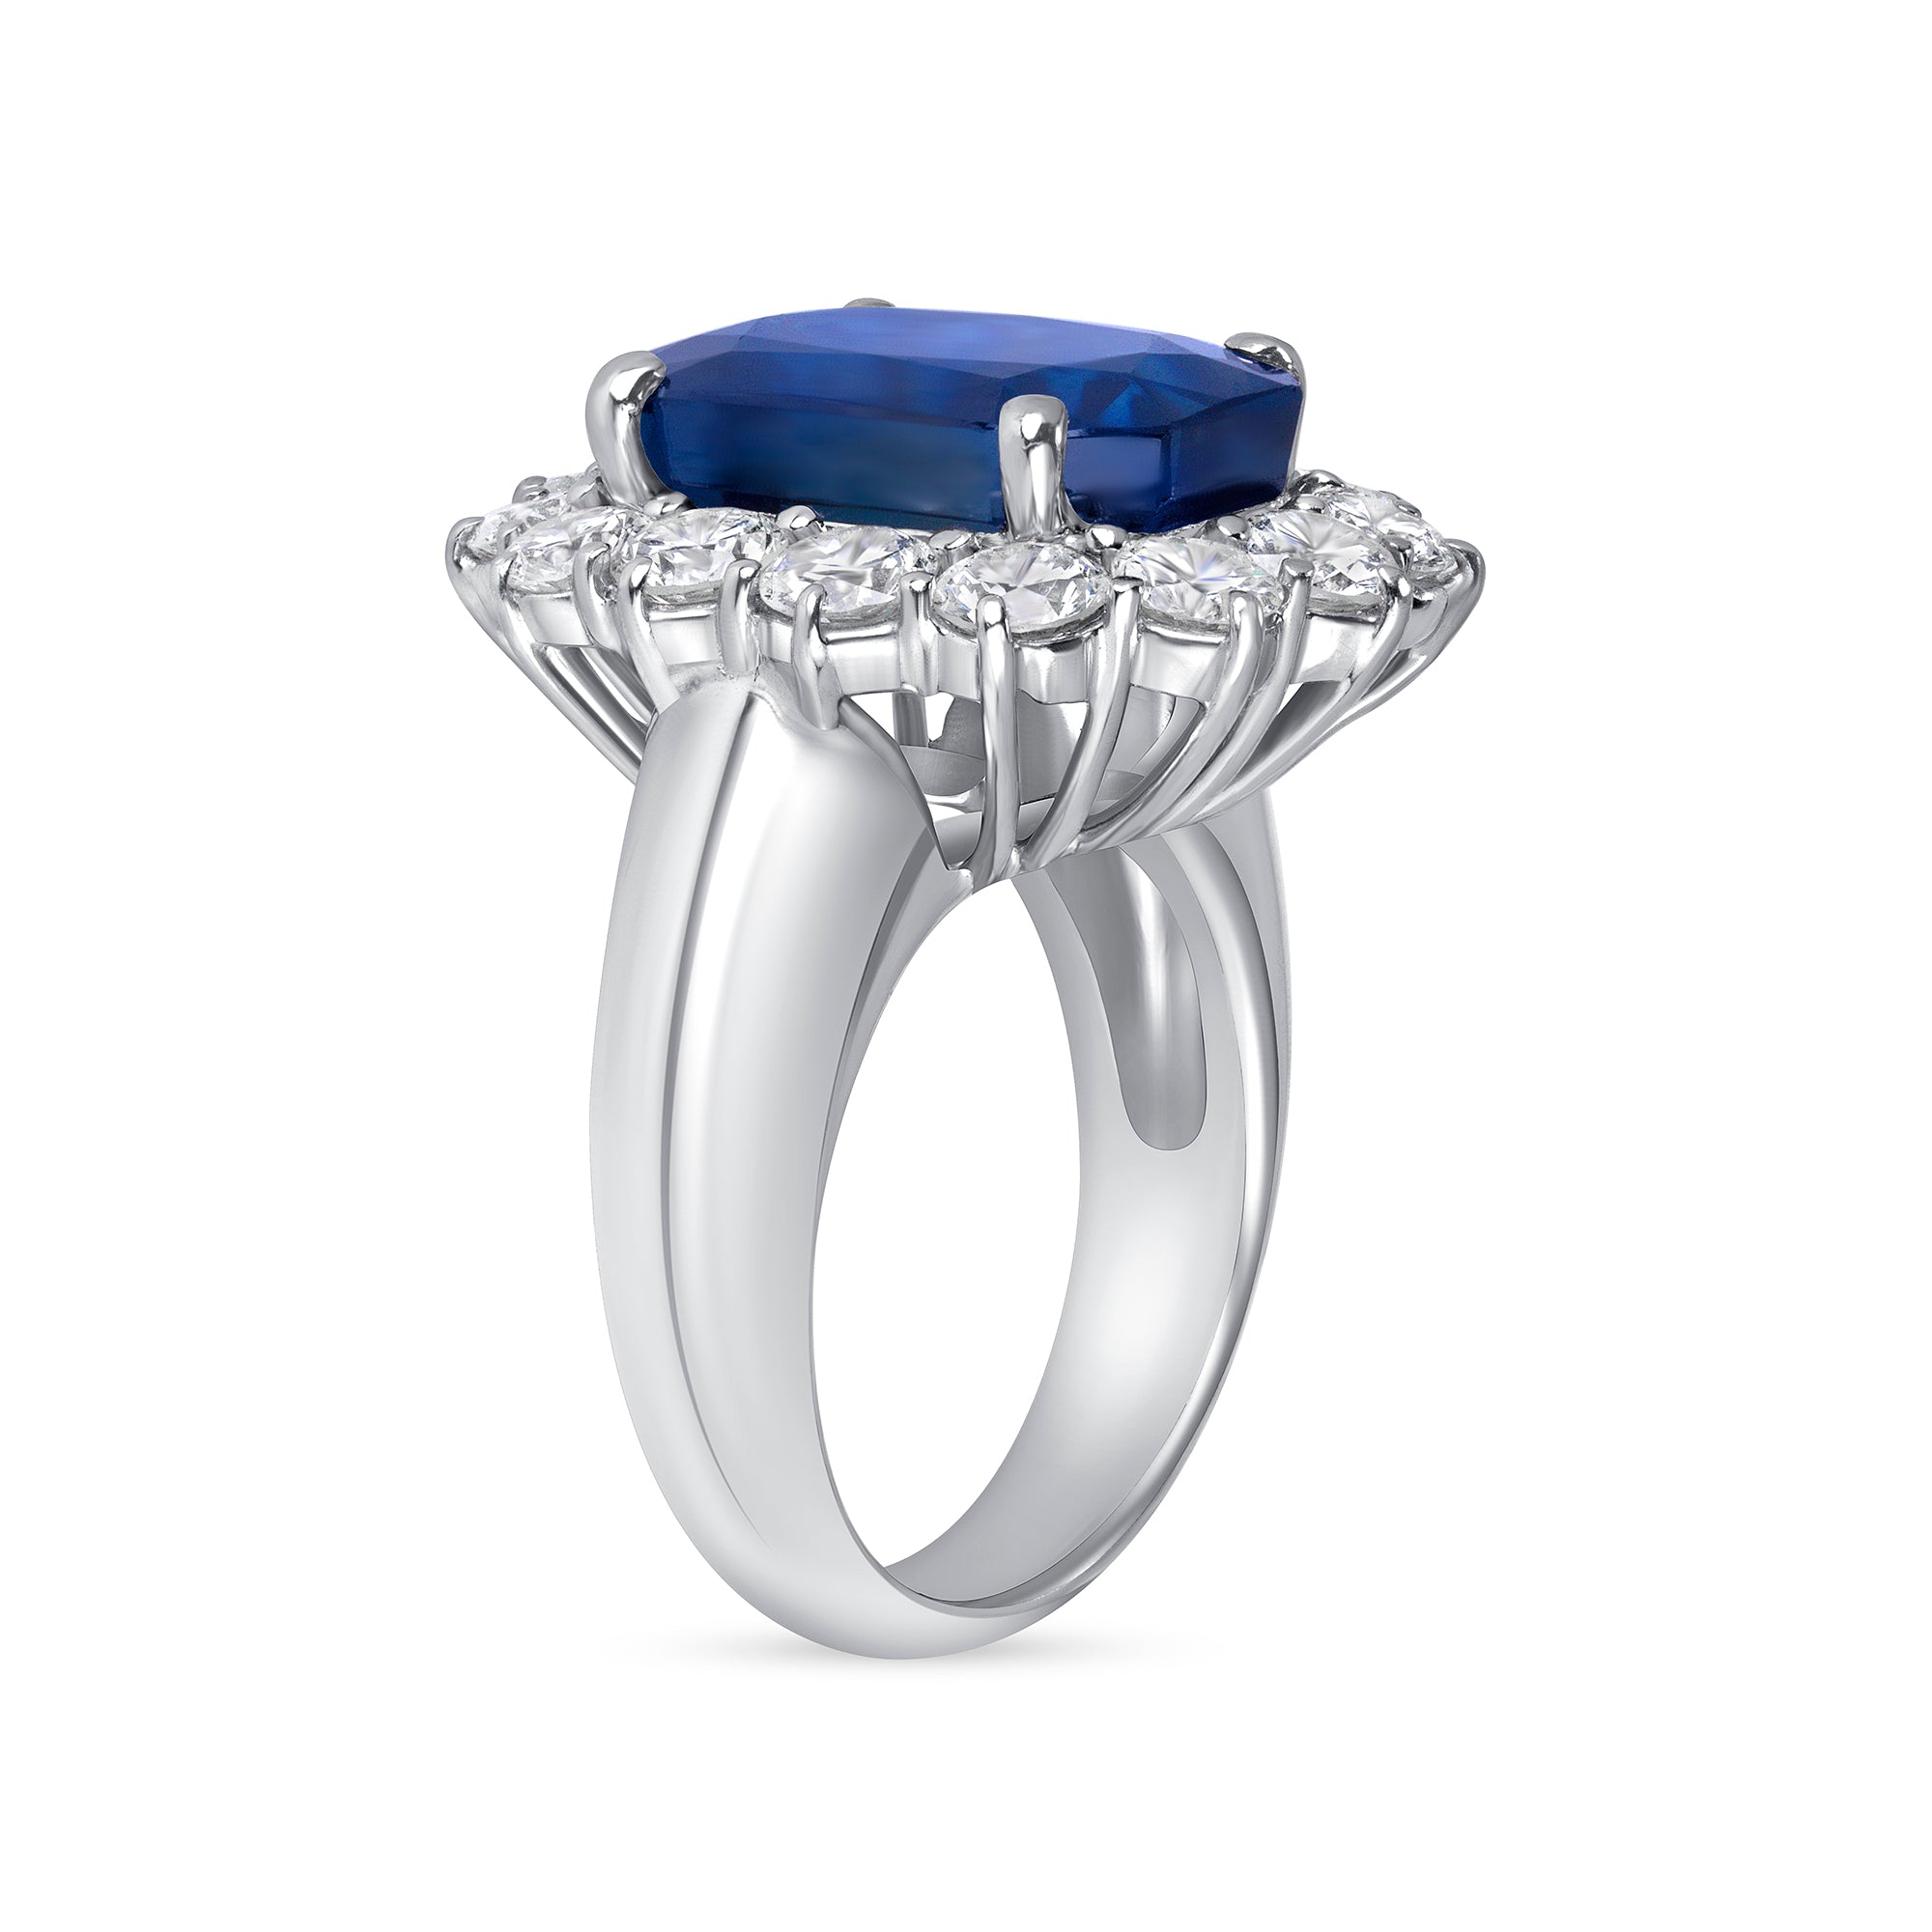 Radiant Cut Sapphire Ring with Round Cut Diamond Halo in Platinum Ruthenium